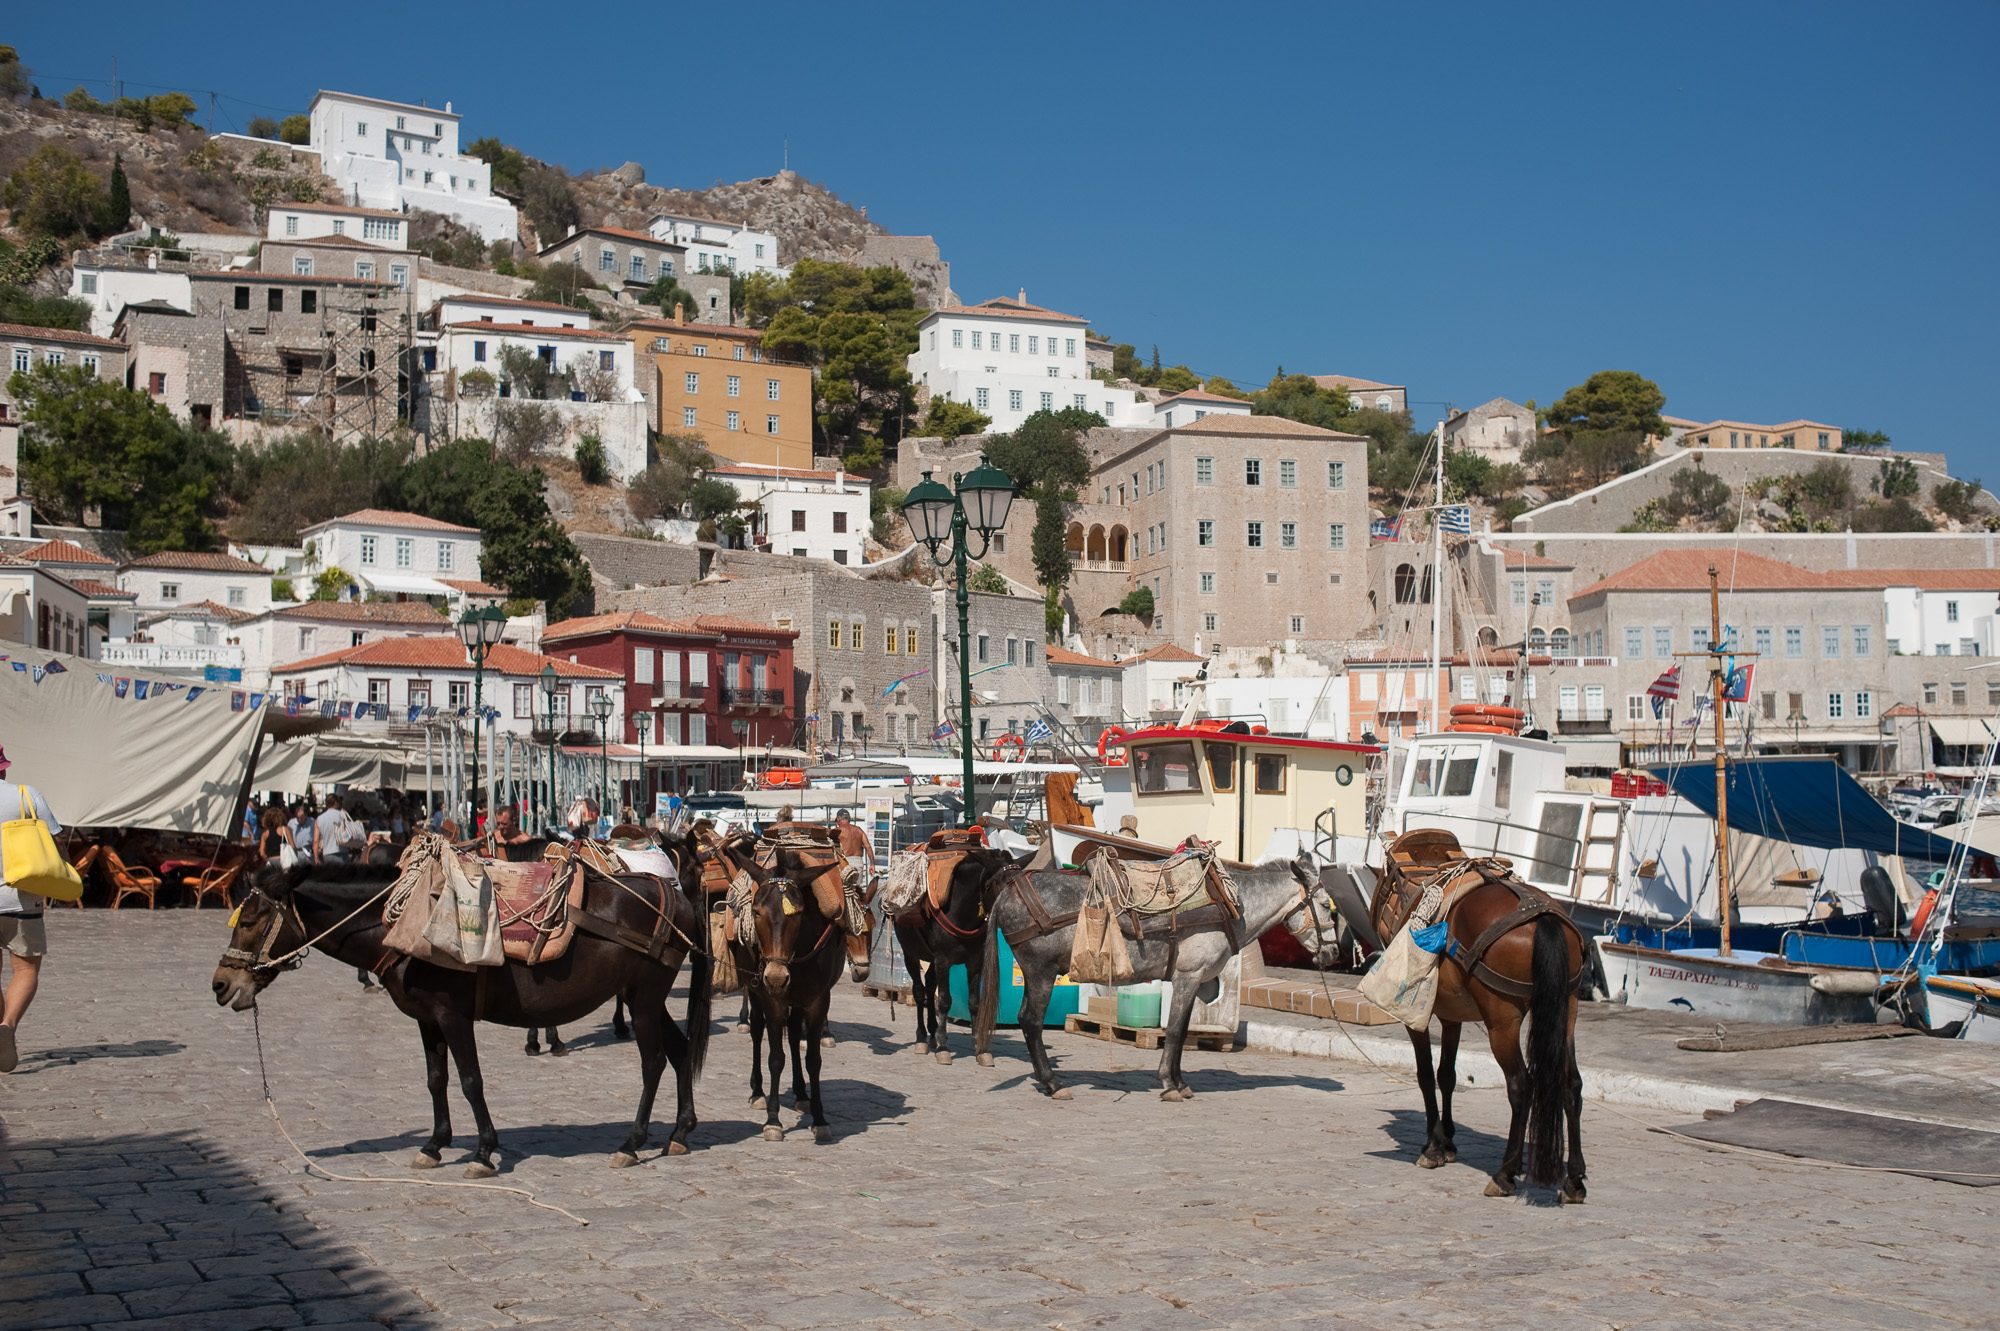 Le port de Hydra. Les mules remplacent les taxis, aussi bien pour les passagers que pour les marchandise.